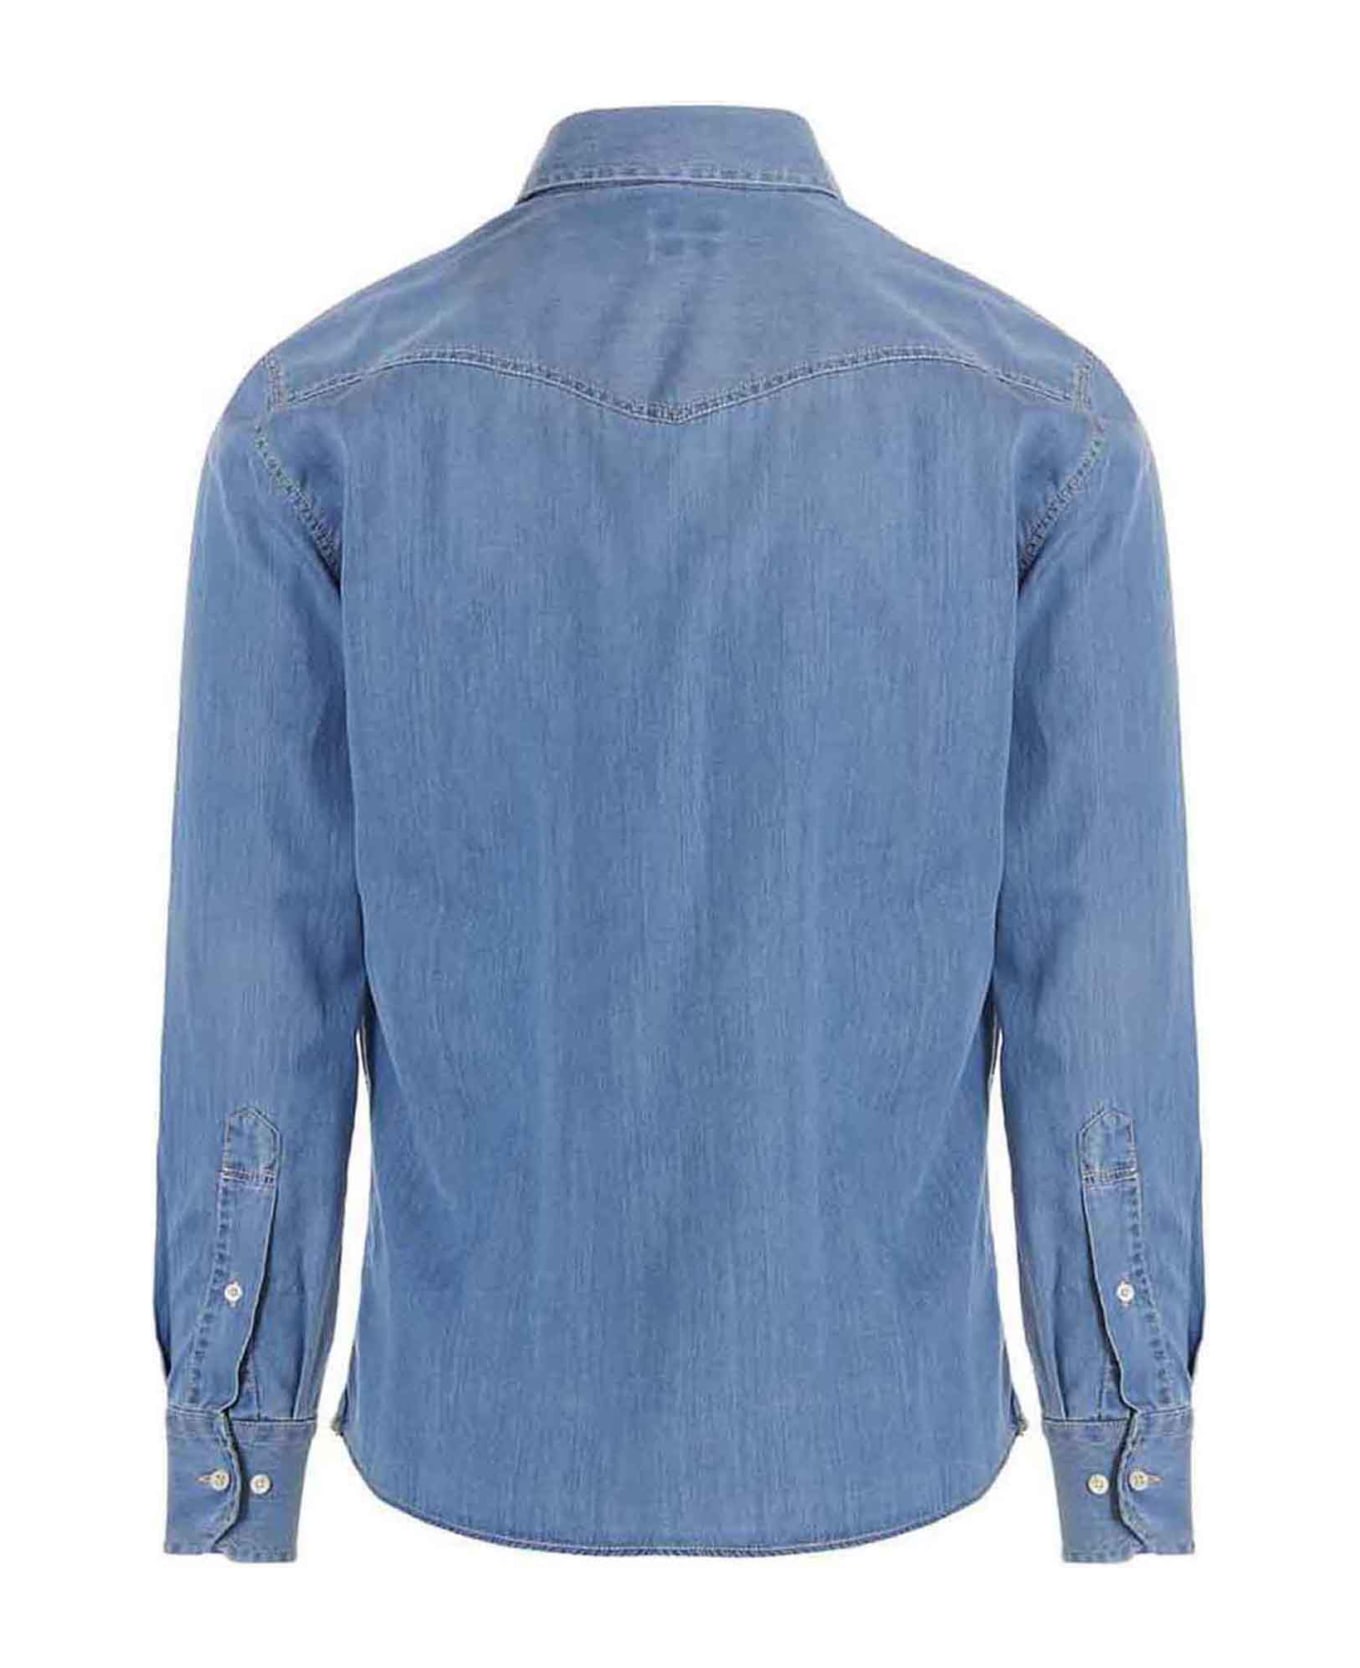 Brunello Cucinelli Texan Shirt - Light Blue